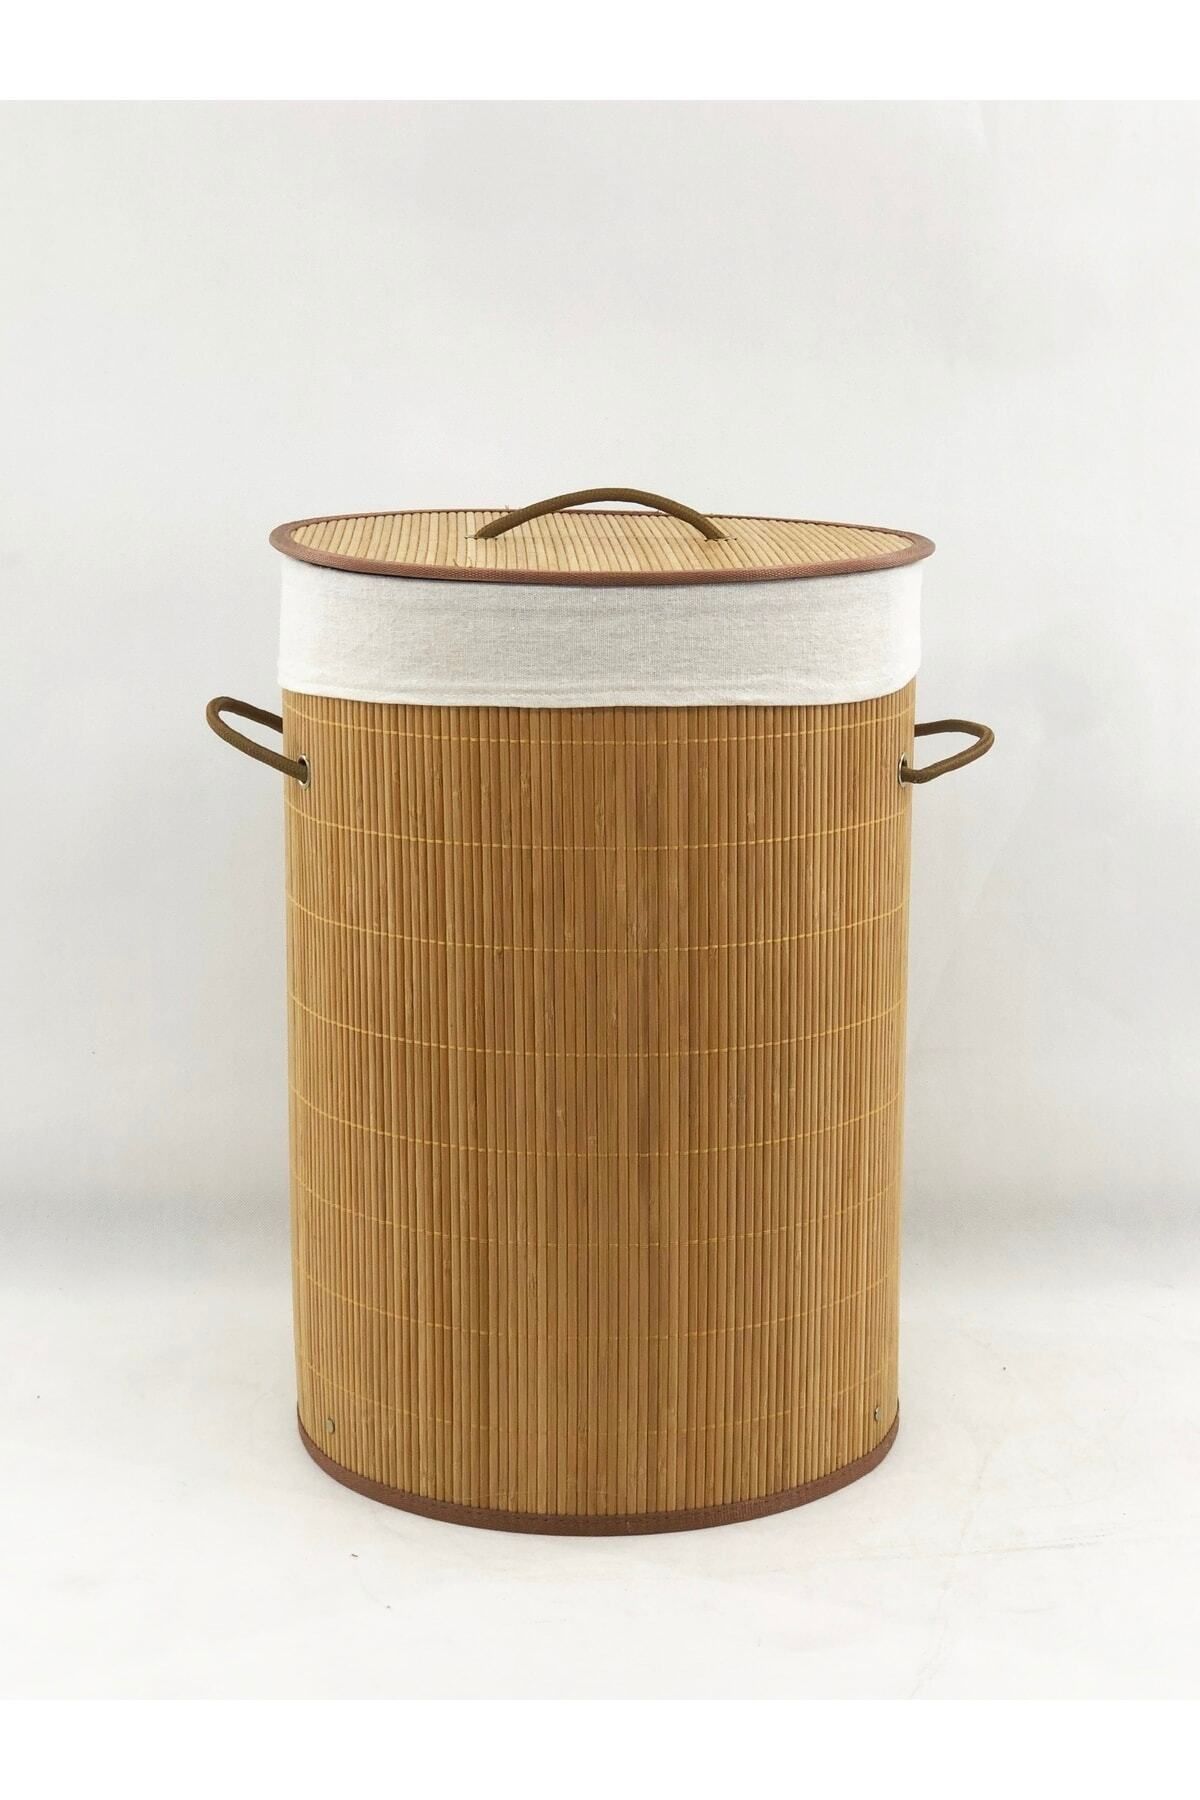 Lorin Katlanır Banyo Bambu Çamaşır Kirli Sepeti Yuvarlak Oval Naturel